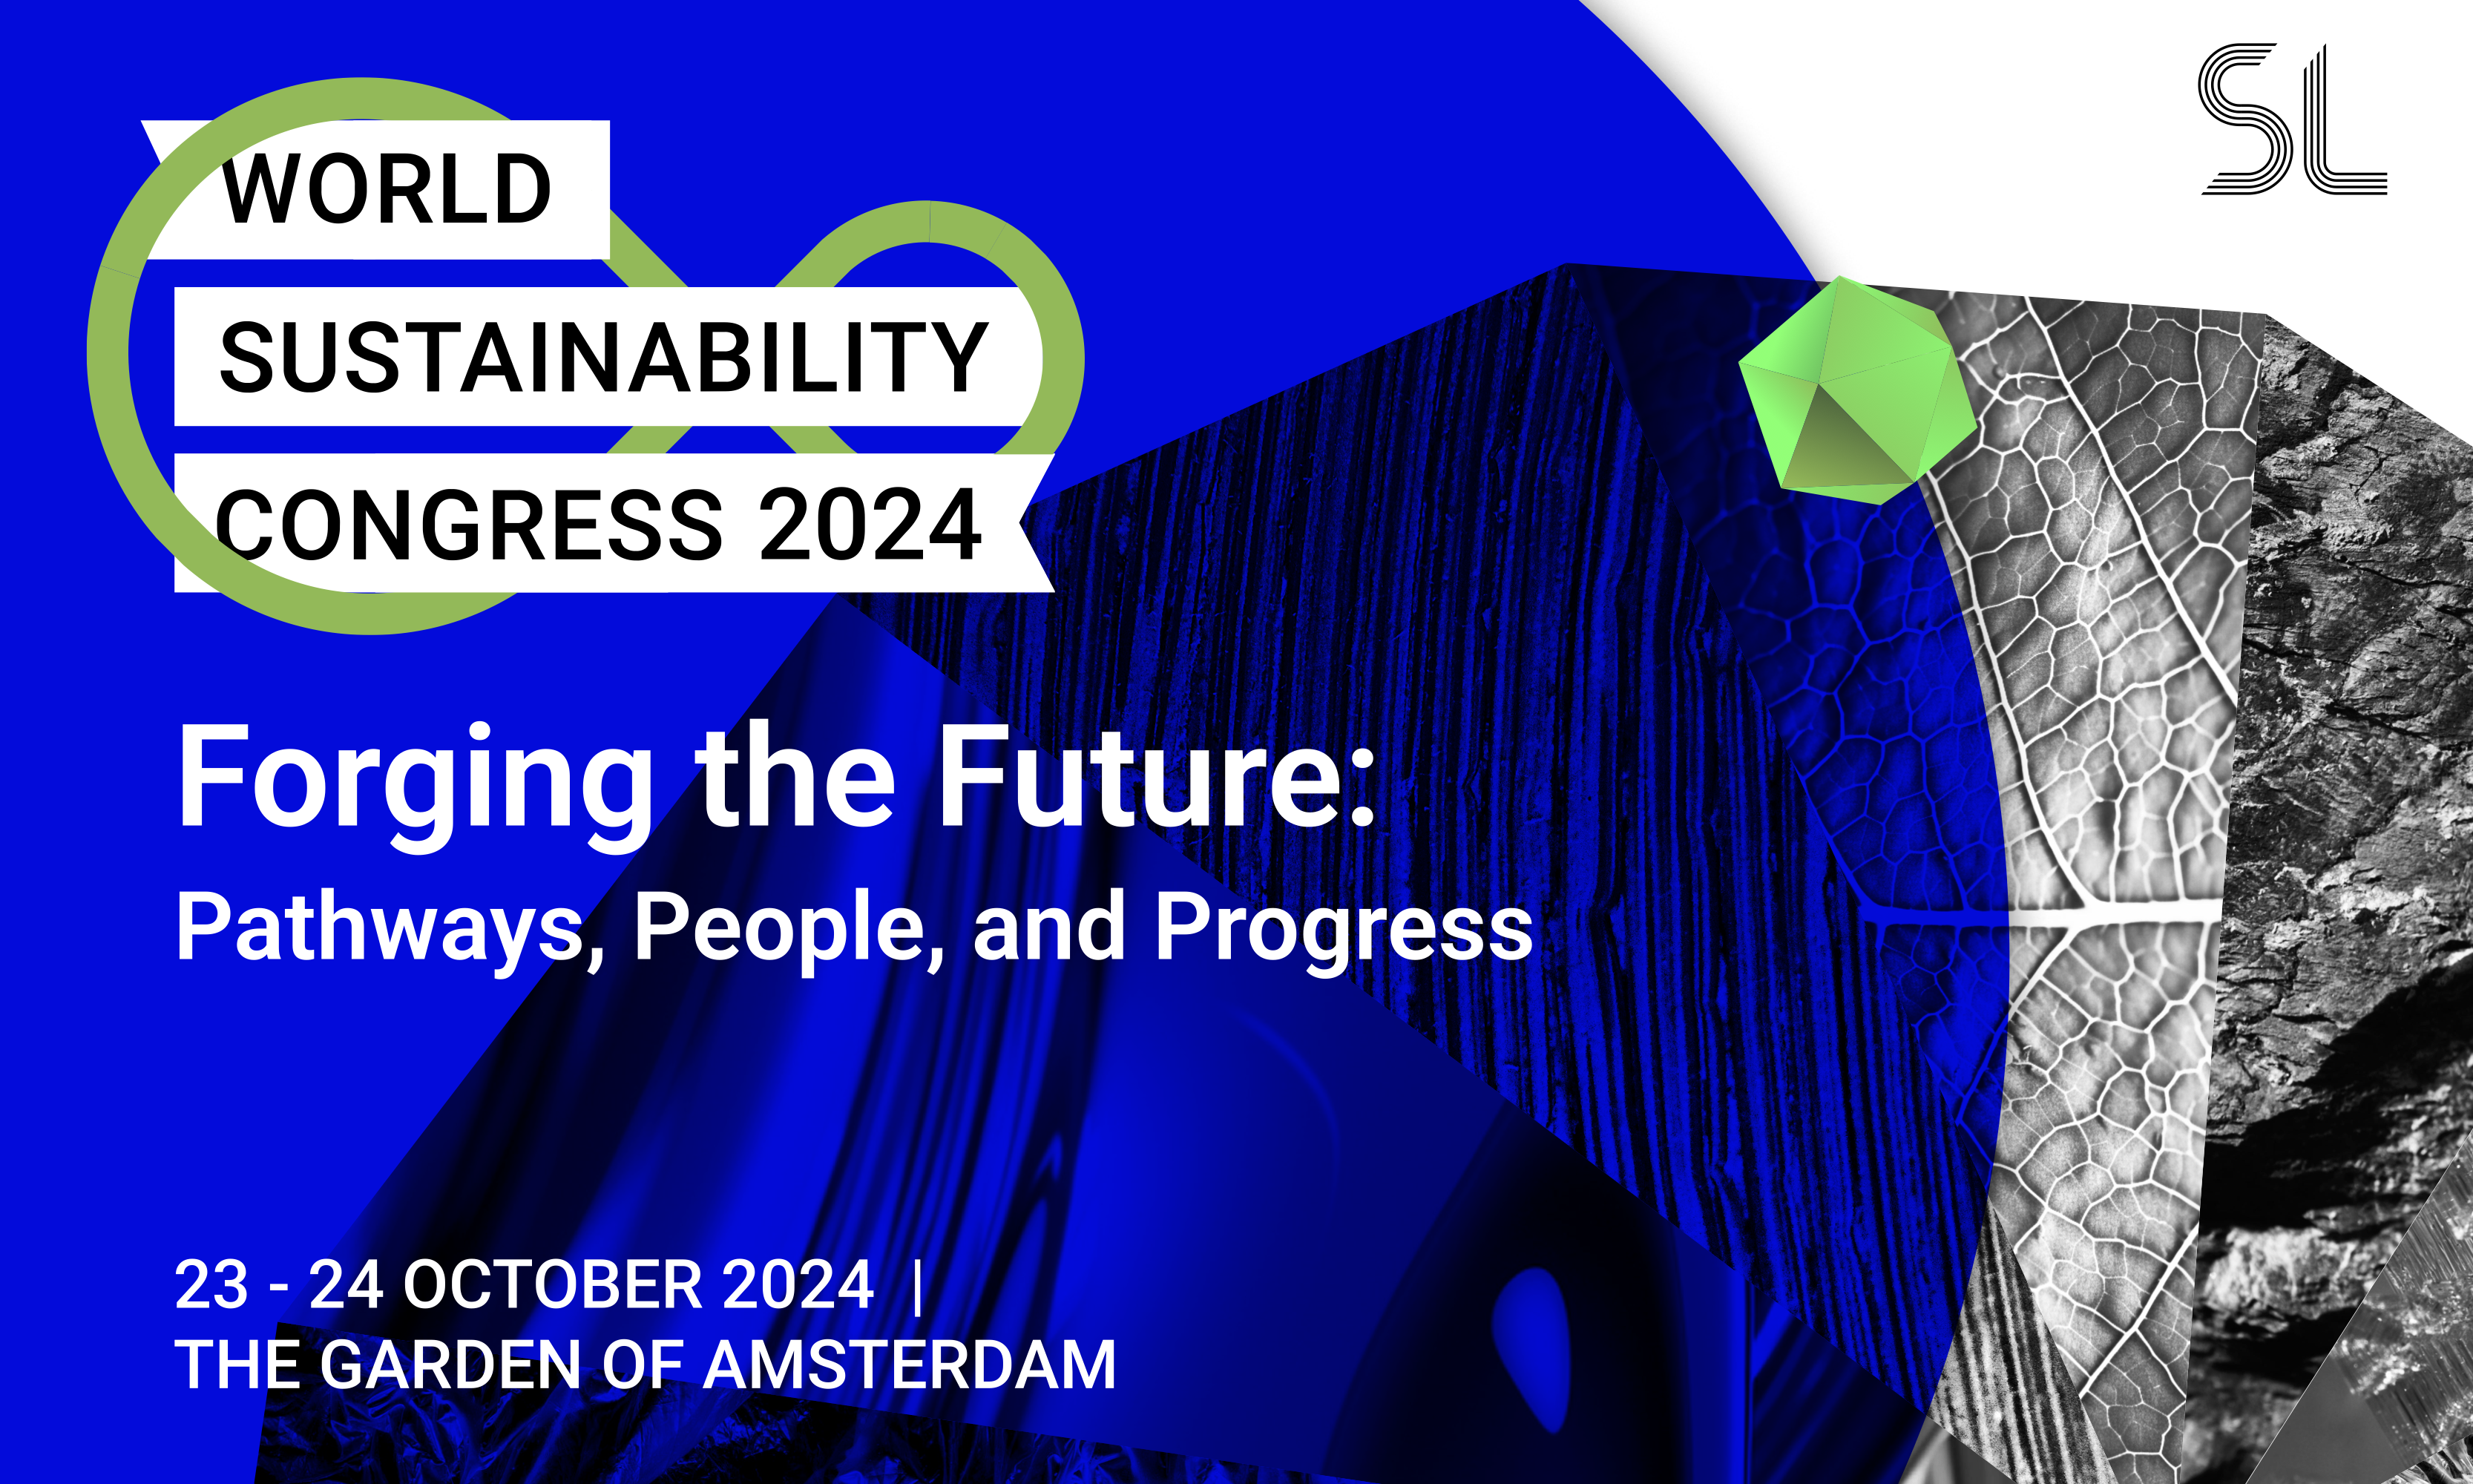 World Sustainability Congress 2024